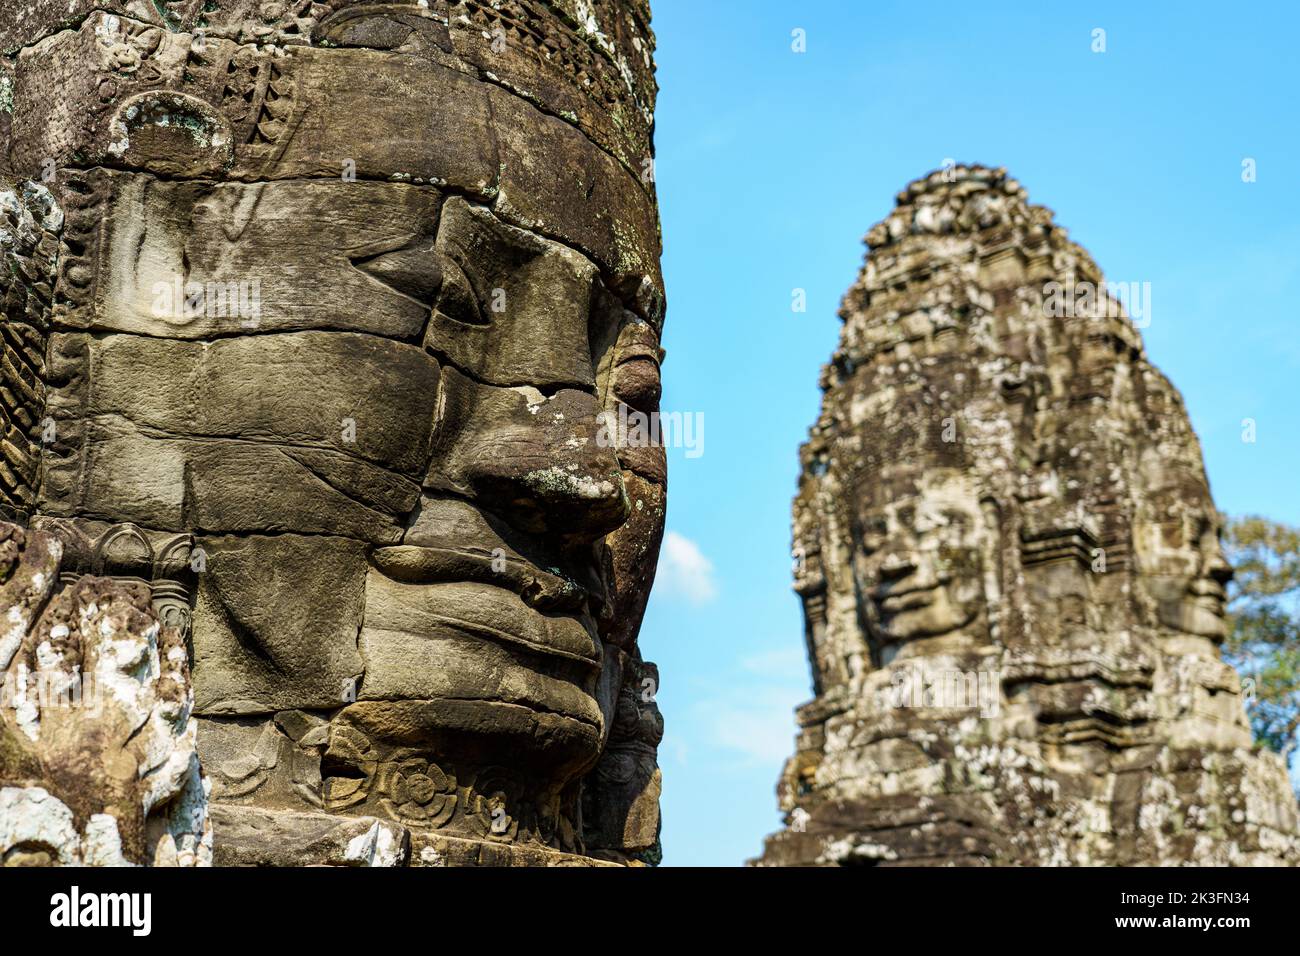 Cambodge. Siem Reap. Le parc archéologique d'Angkor. Chefs de sculpture de Bouddha au temple de Bayon 12th siècle temple hindou Banque D'Images